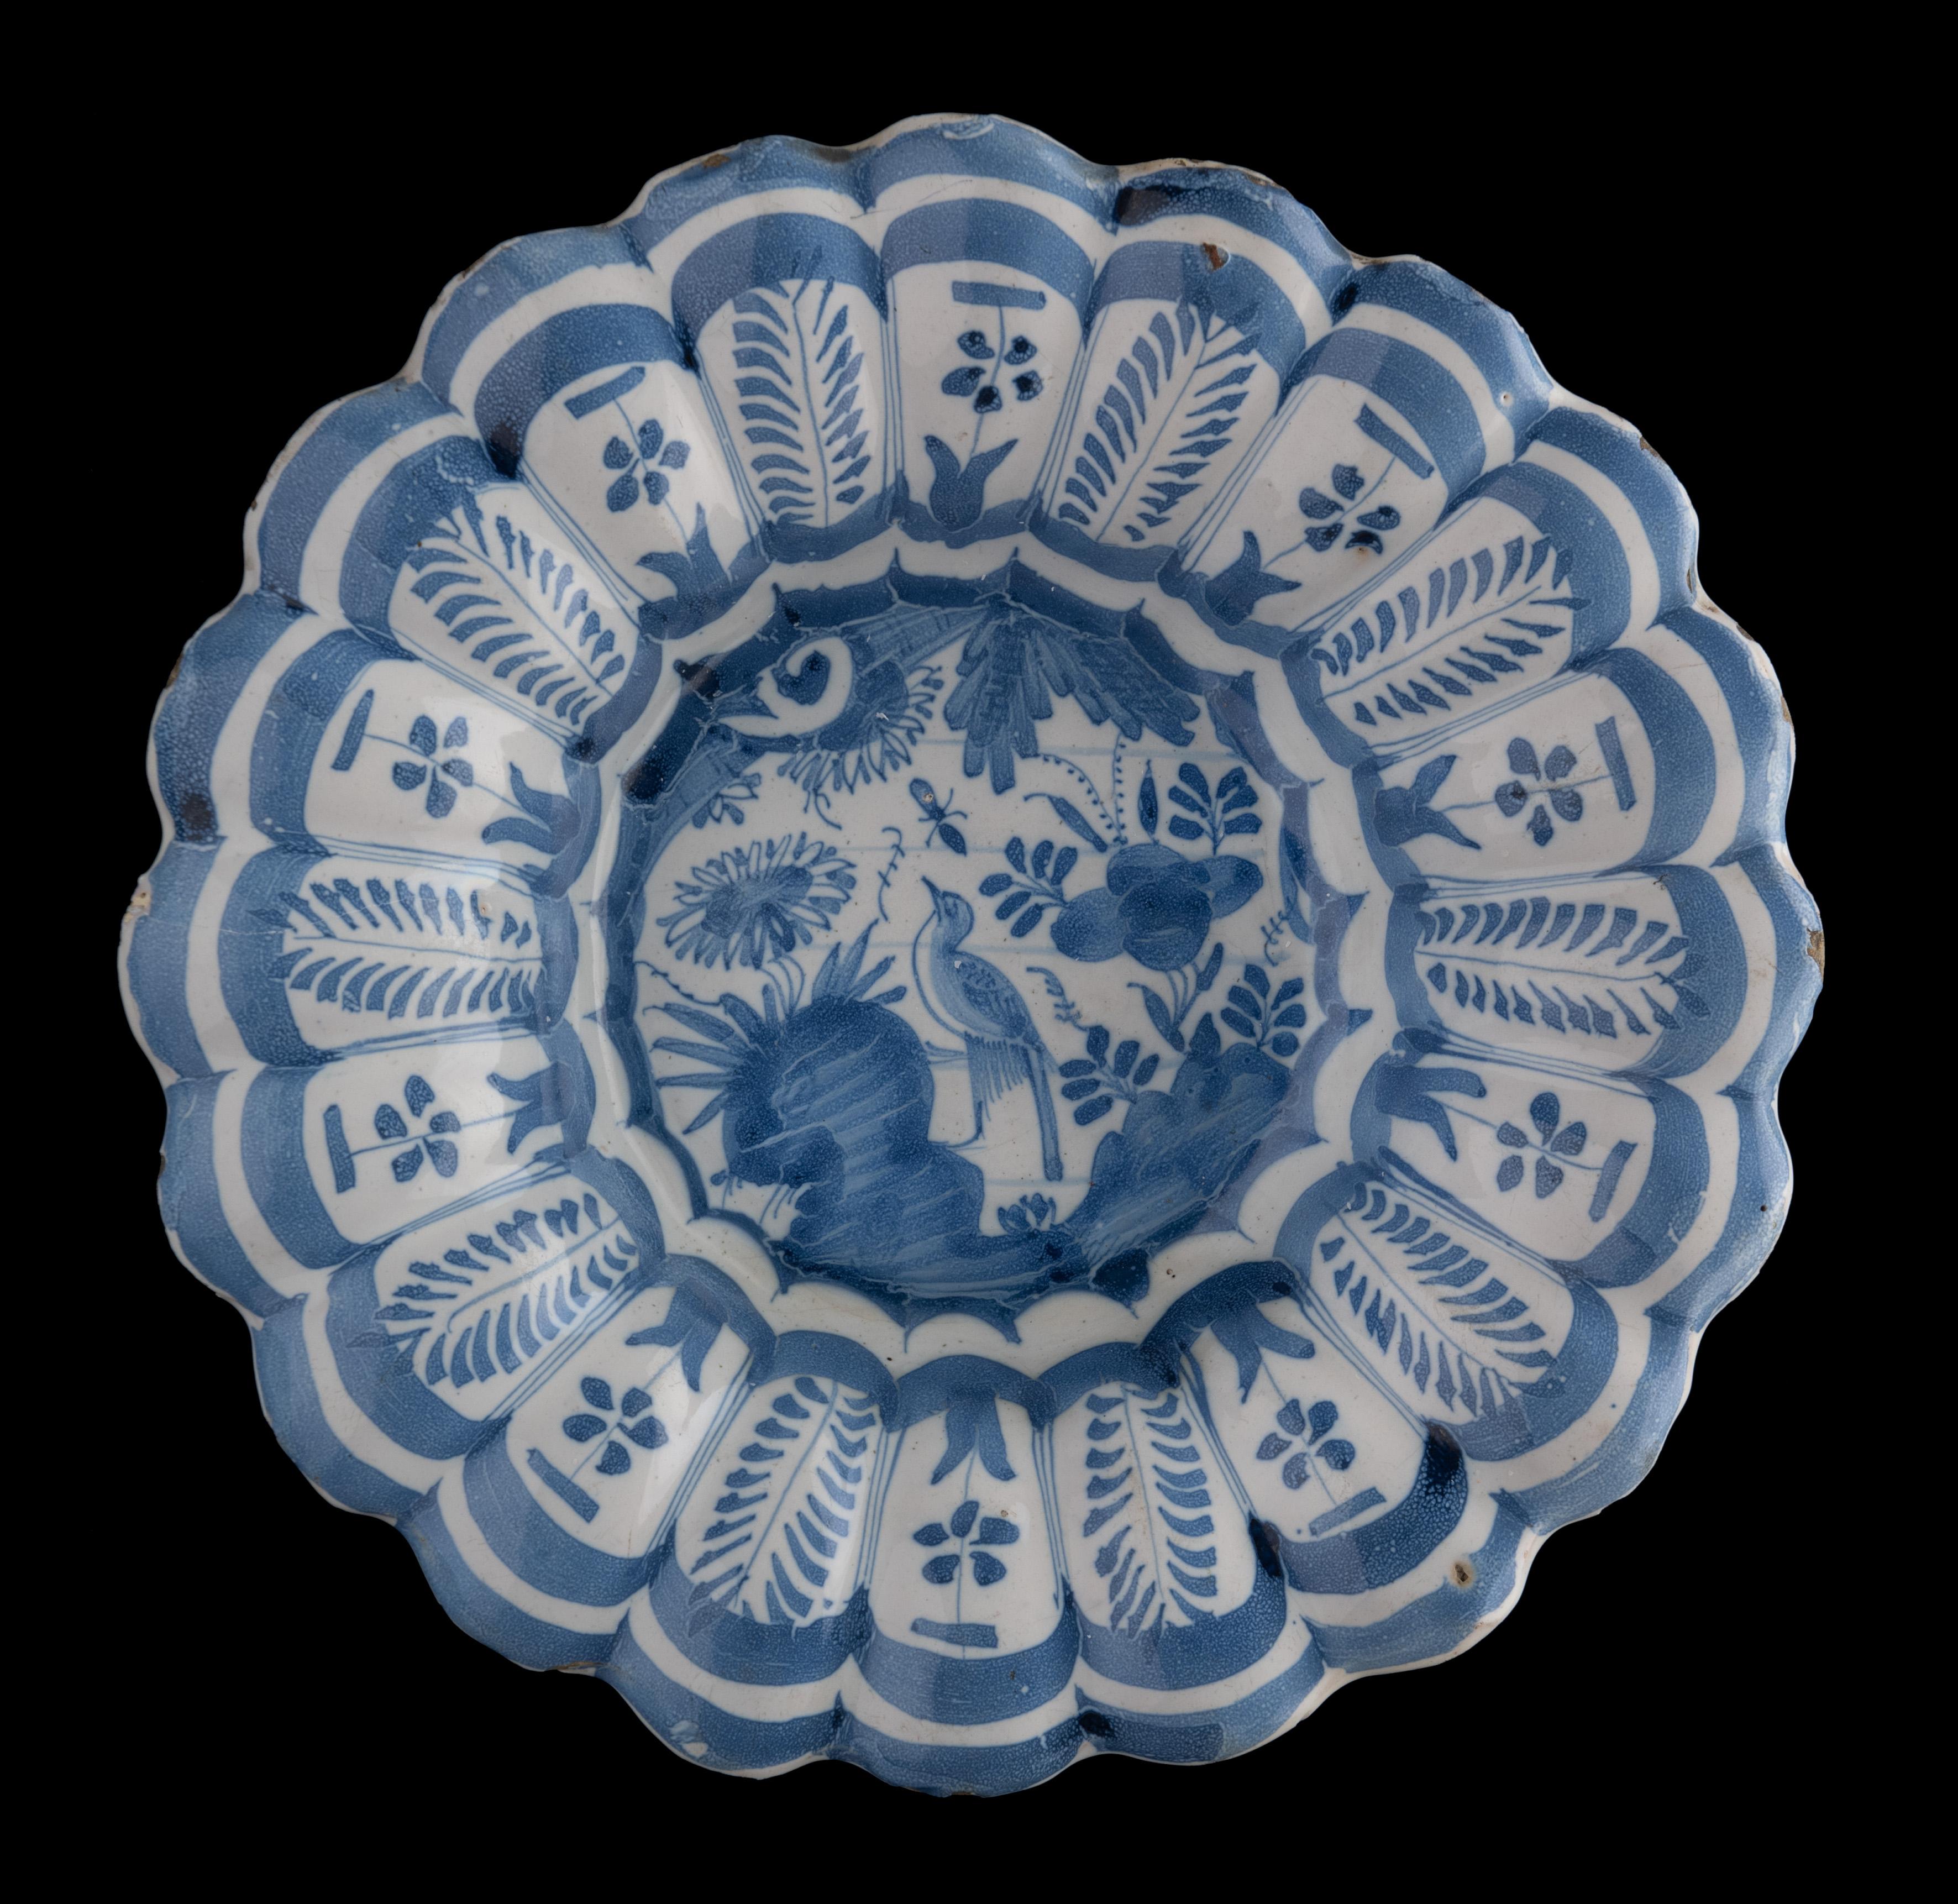 Plat lobé en chinoiserie bleu et blanc
Les Pays-Bas, 1630-1650

Le plat lobé bleu et blanc est composé de vingt petits lobes et est peint au centre d'un décor floral de chinoiserie représentant un oiseau sur un rocher parmi des fleurs et des